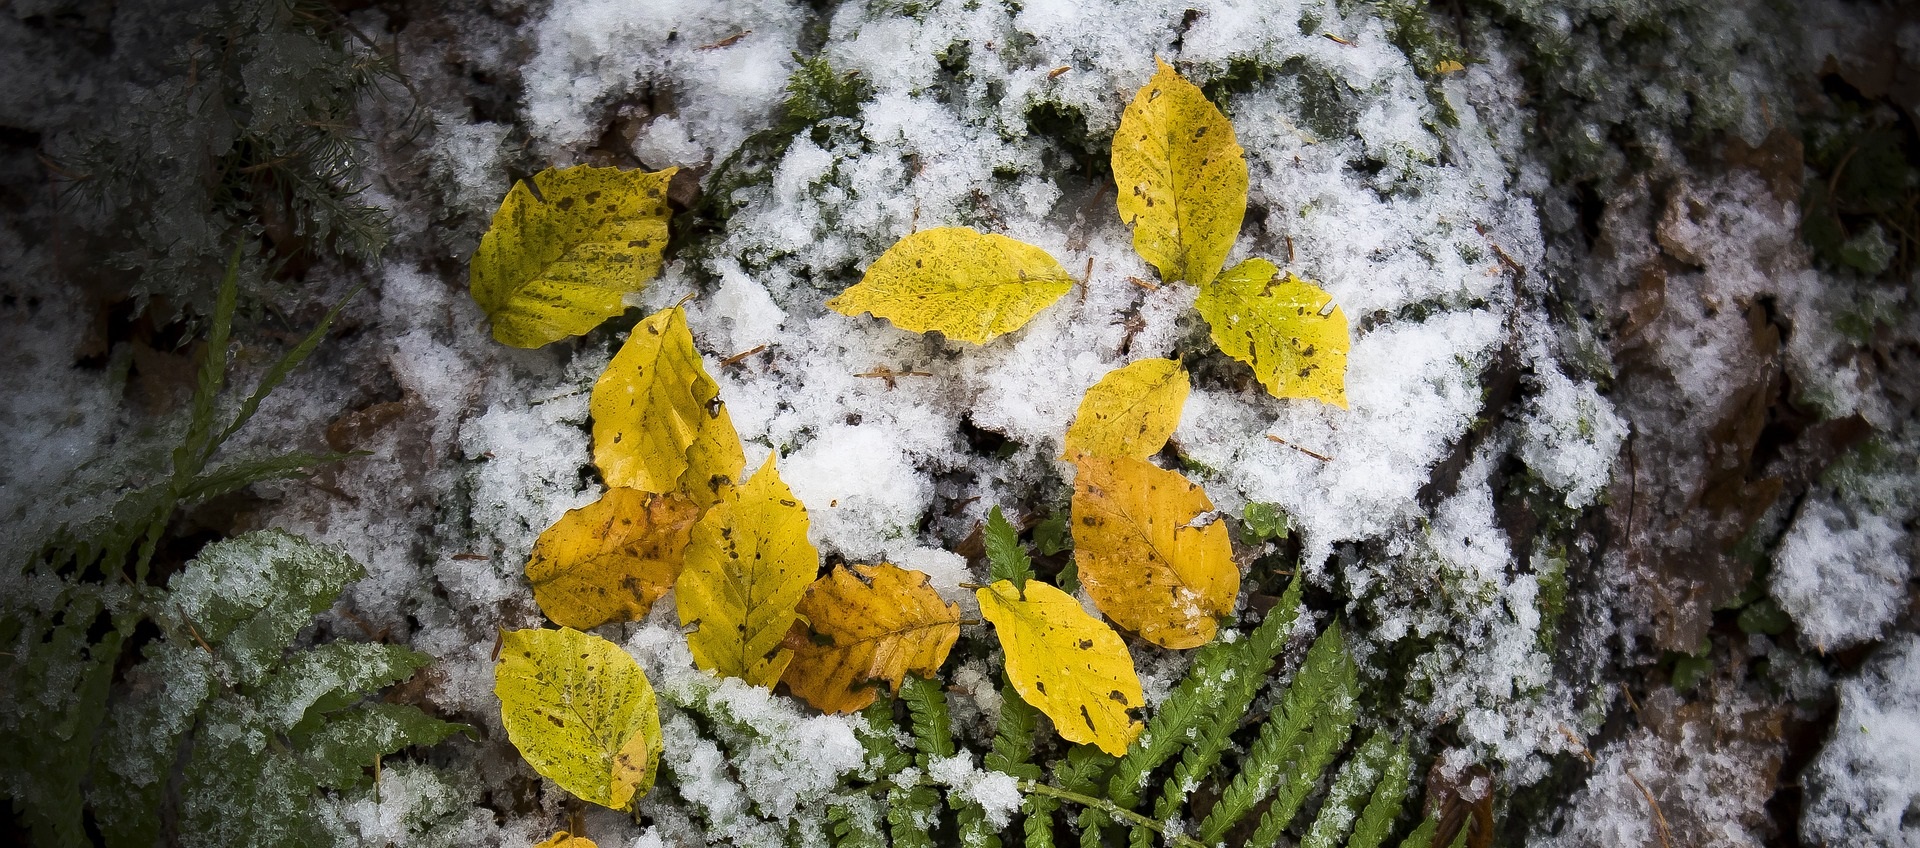 Snötäckt mark med gröna och gula blad sticker fram igenom och ligger på snön.